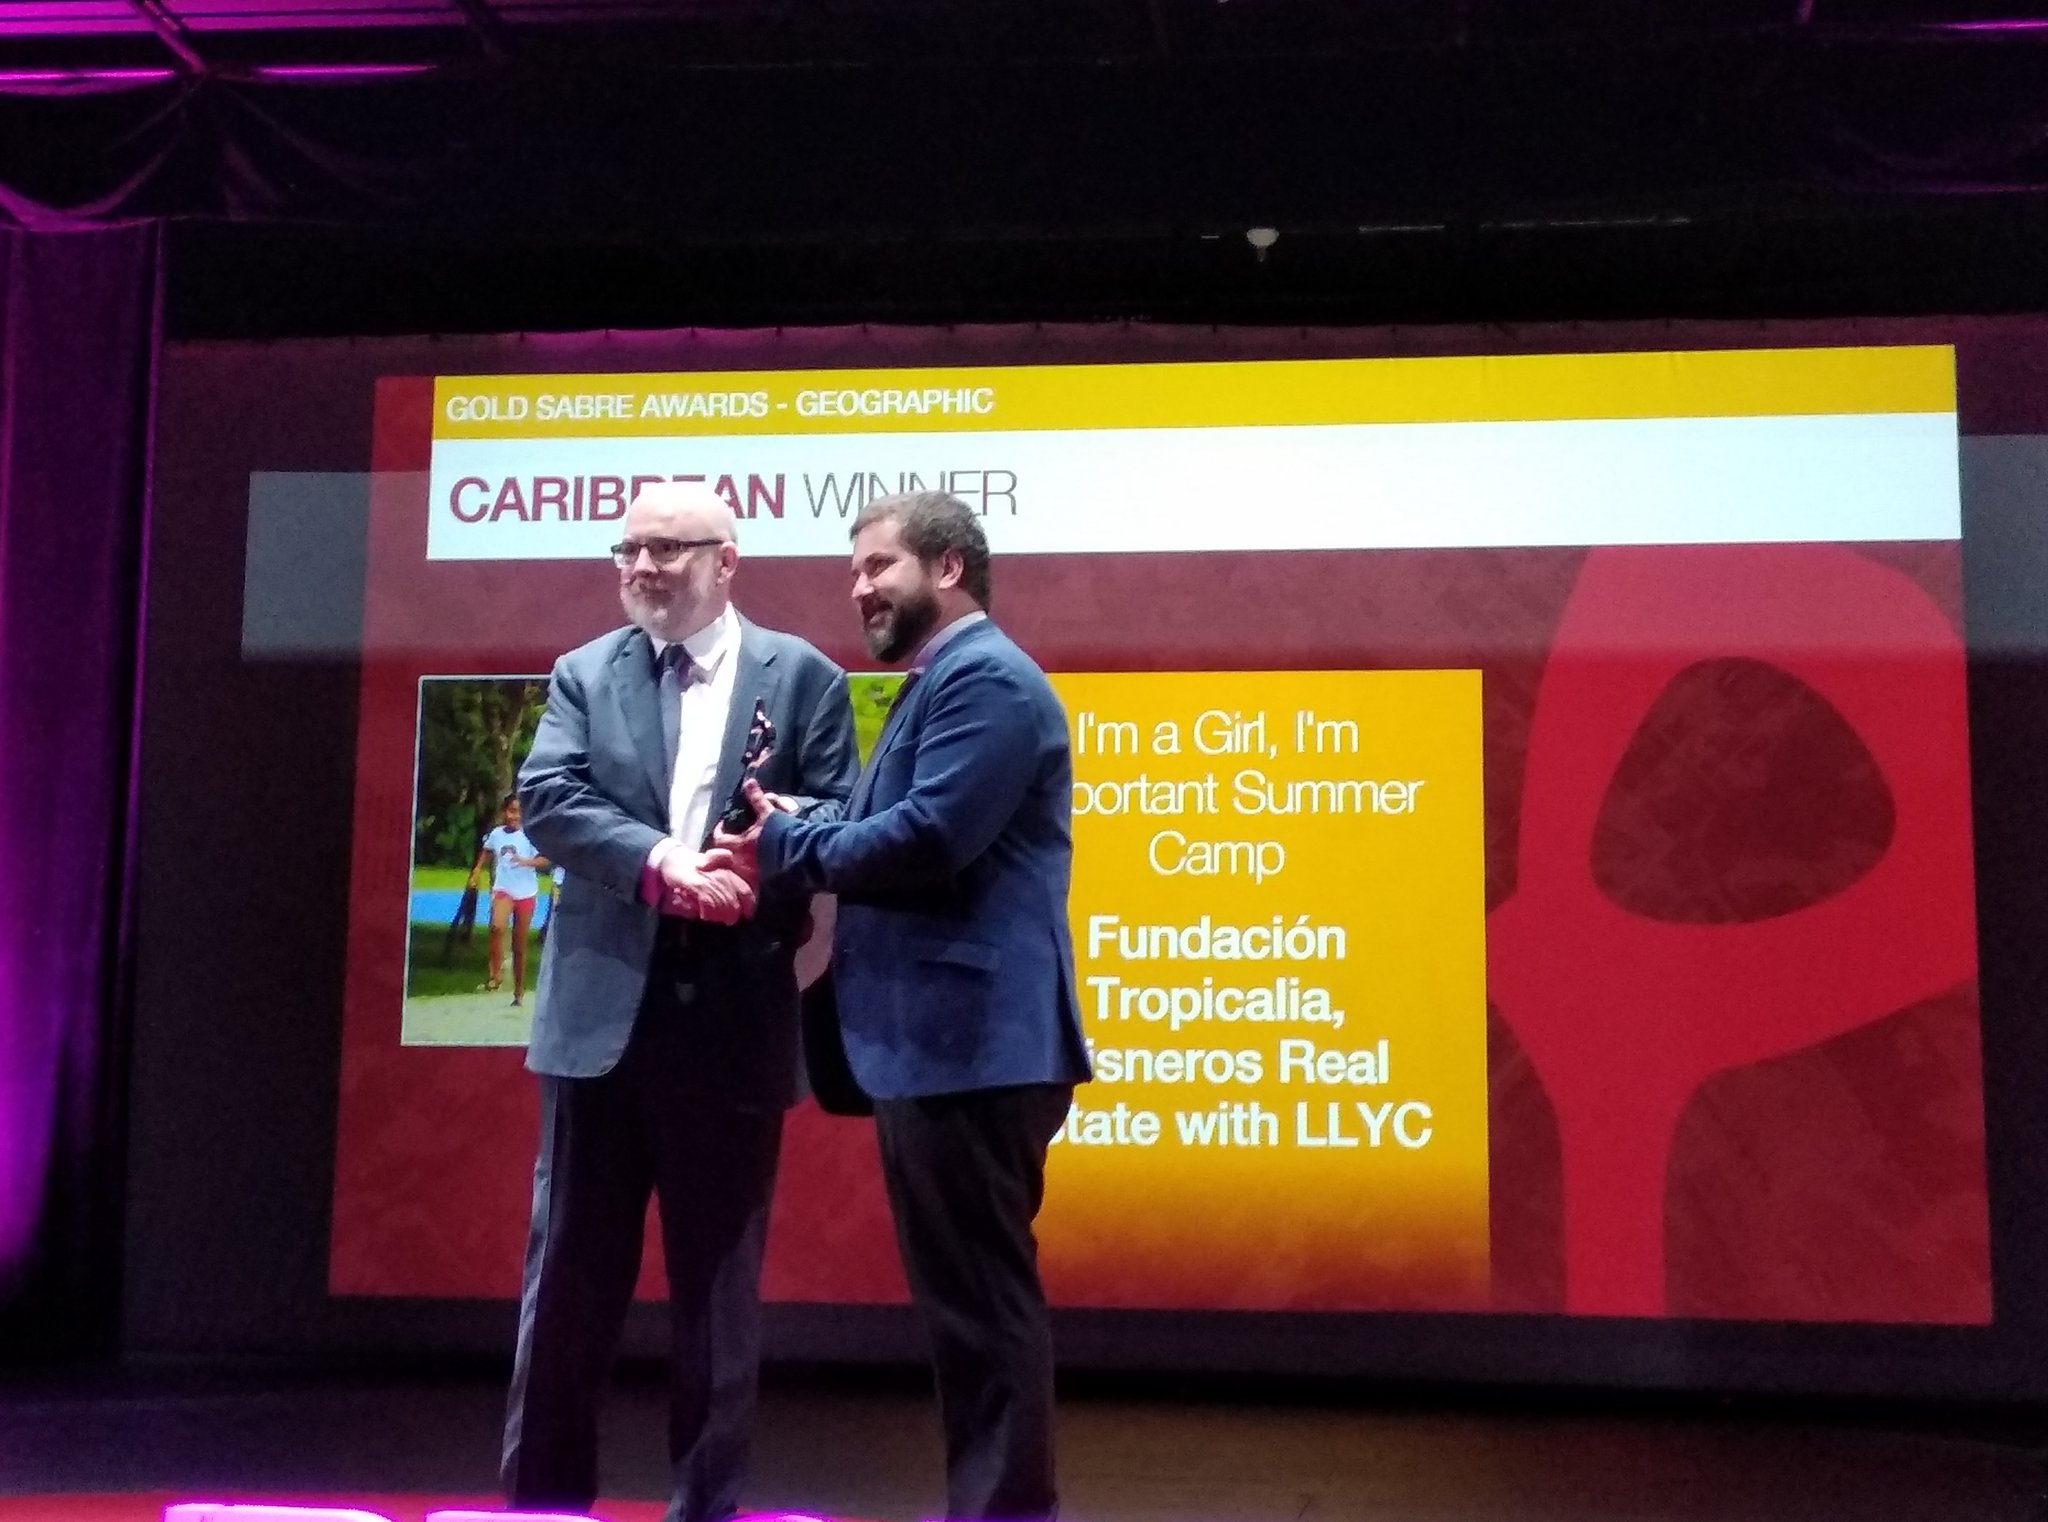 LLYC y Fundación Tropicalia, ganadores en los SABRE Awards Latin America 2019